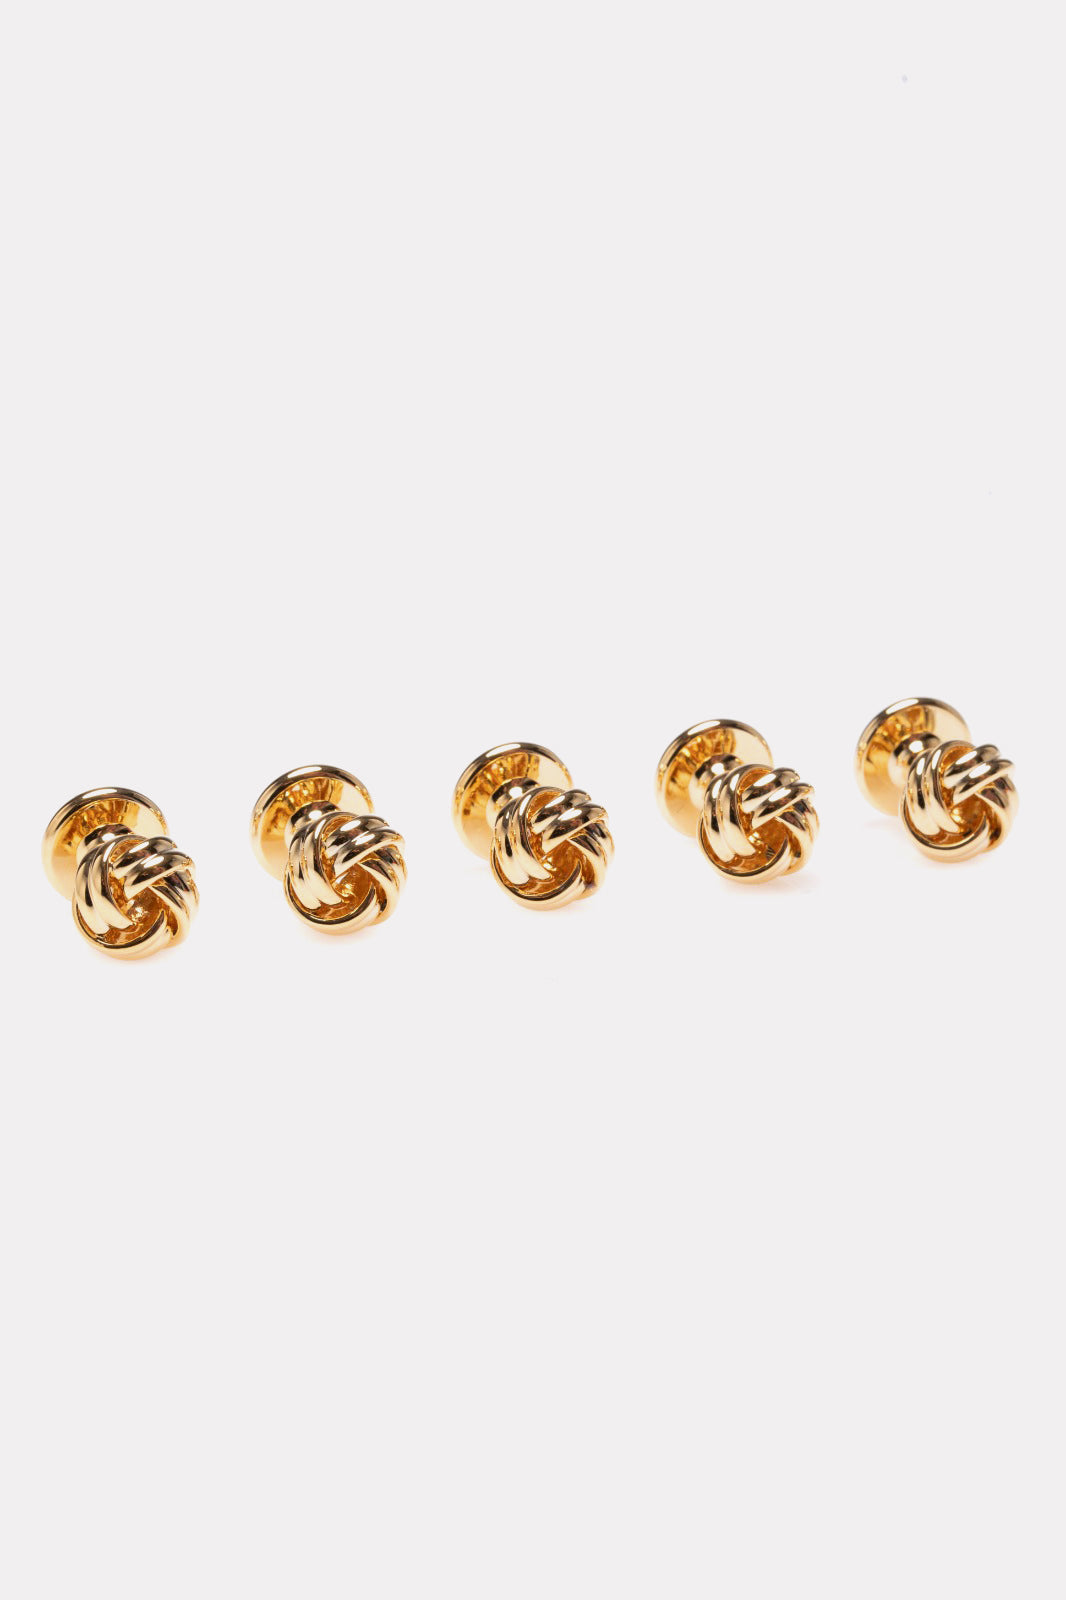 Set of golden knot buttons